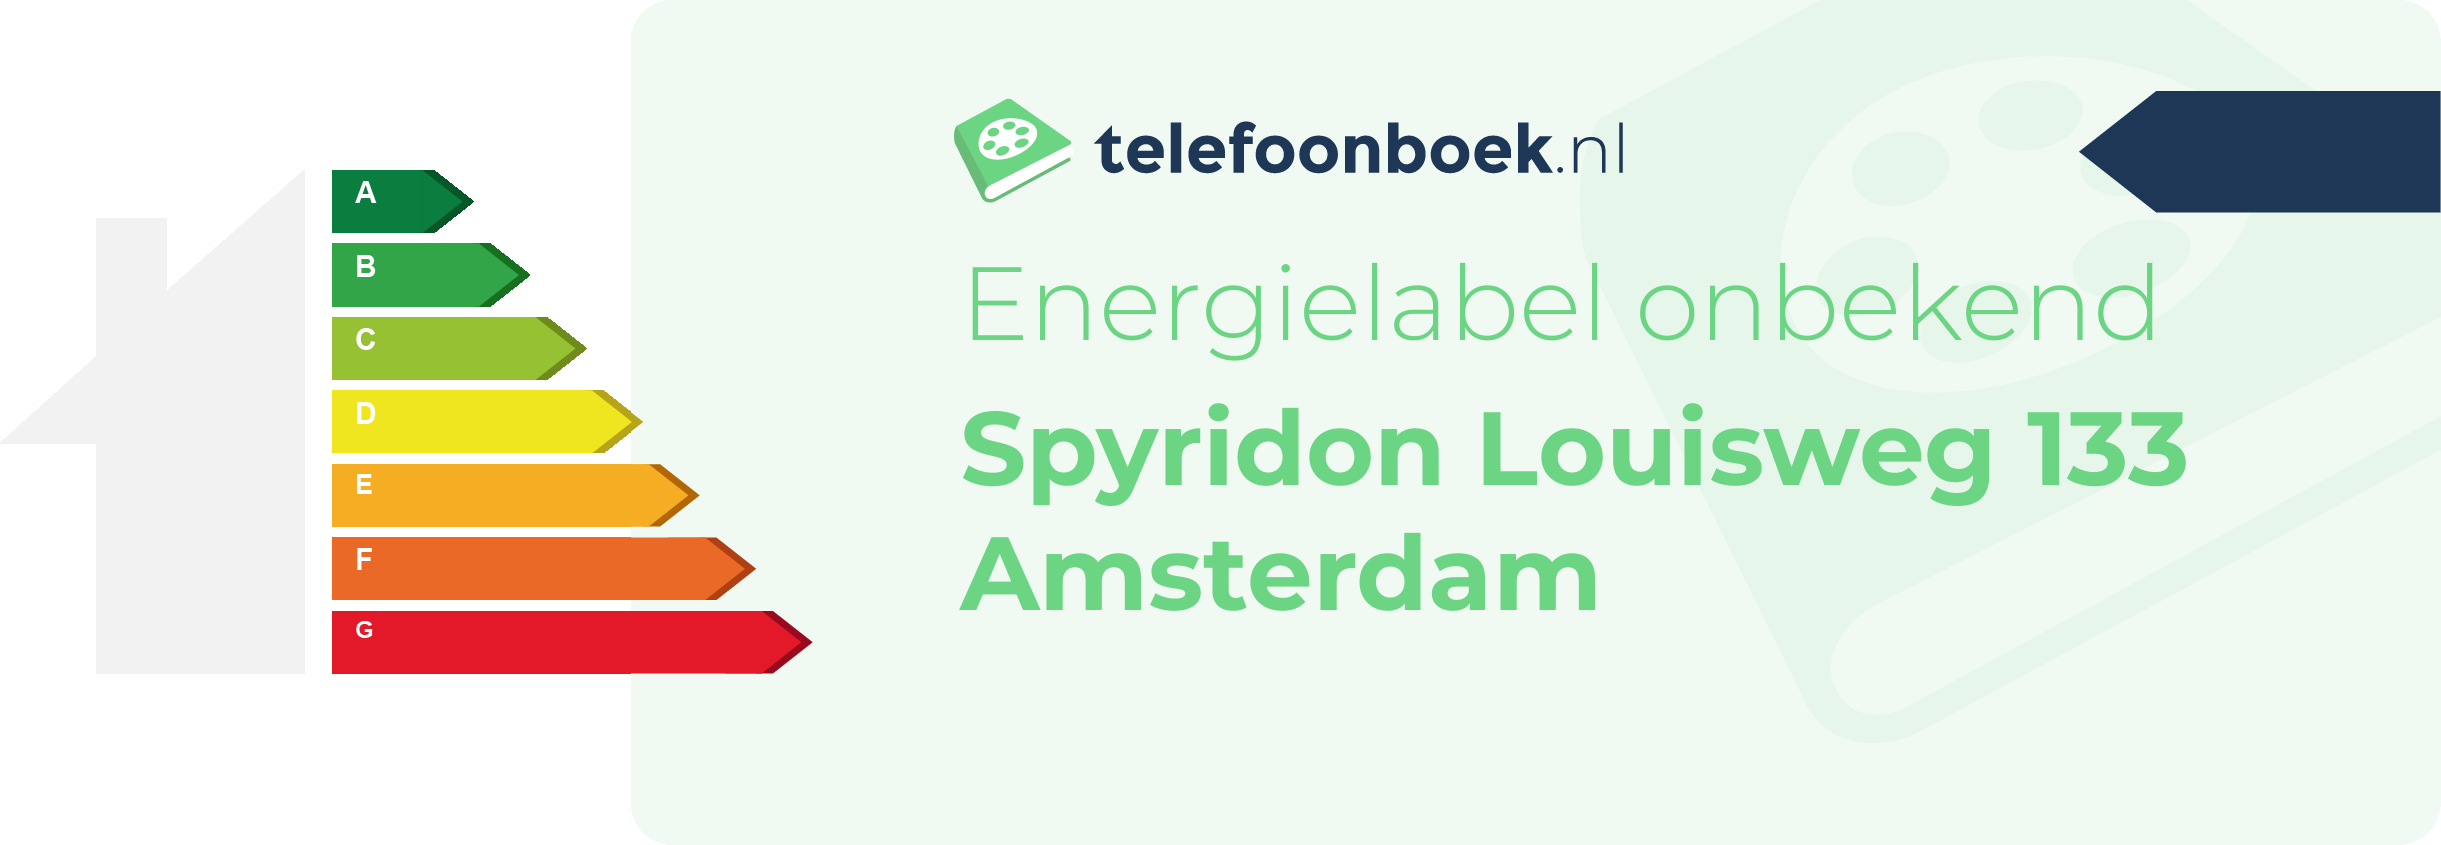 Energielabel Spyridon Louisweg 133 Amsterdam